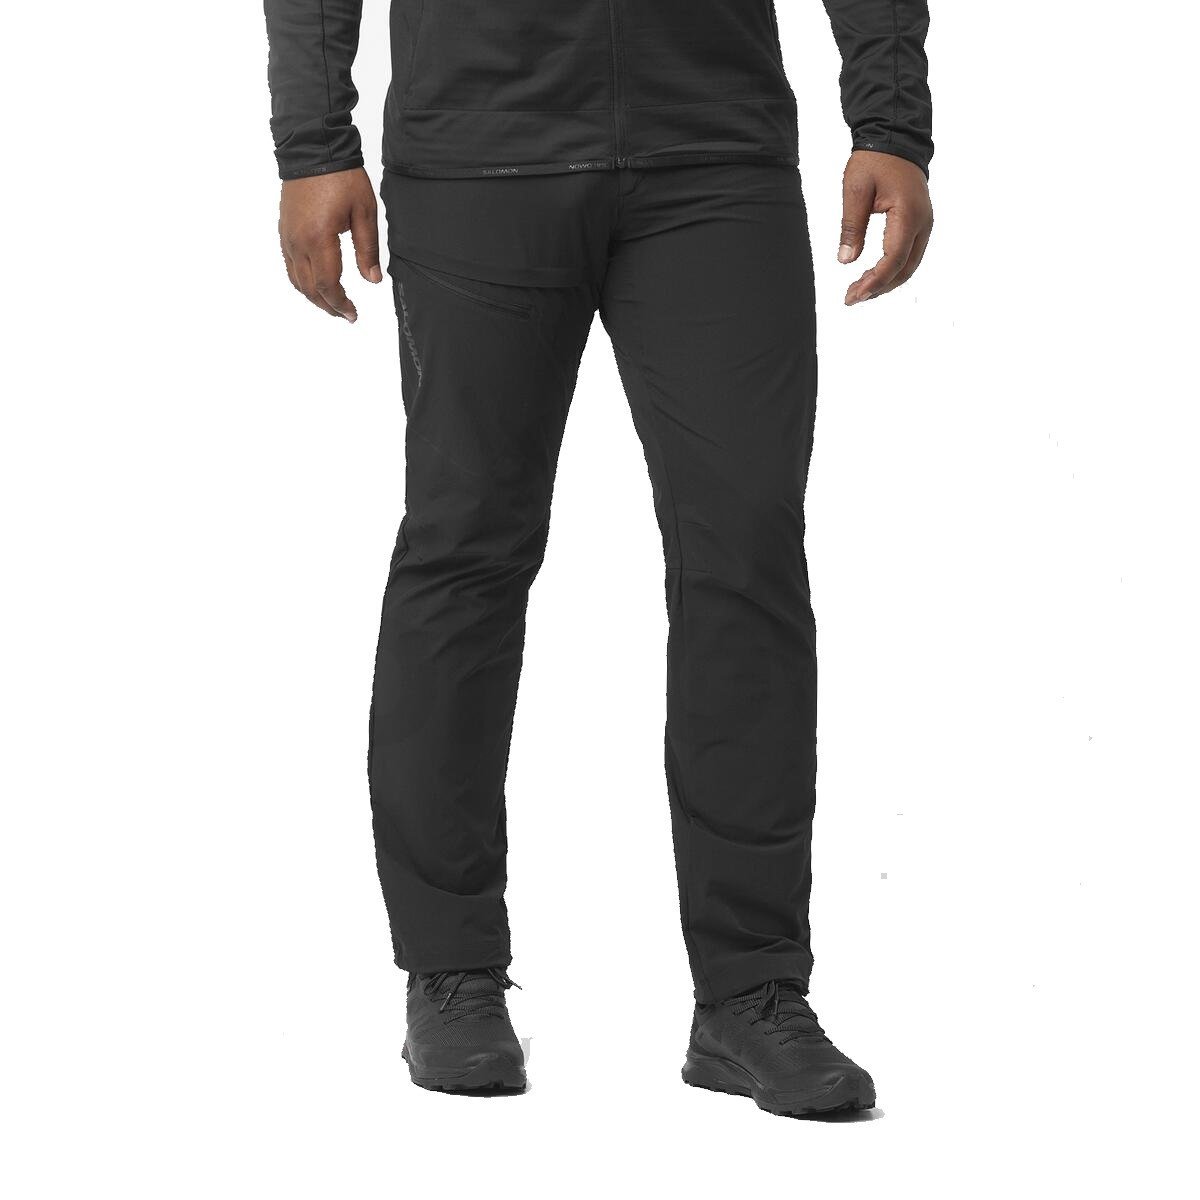 Salomon Wayfarer nohavice M - čierne (štandardná dĺžka)